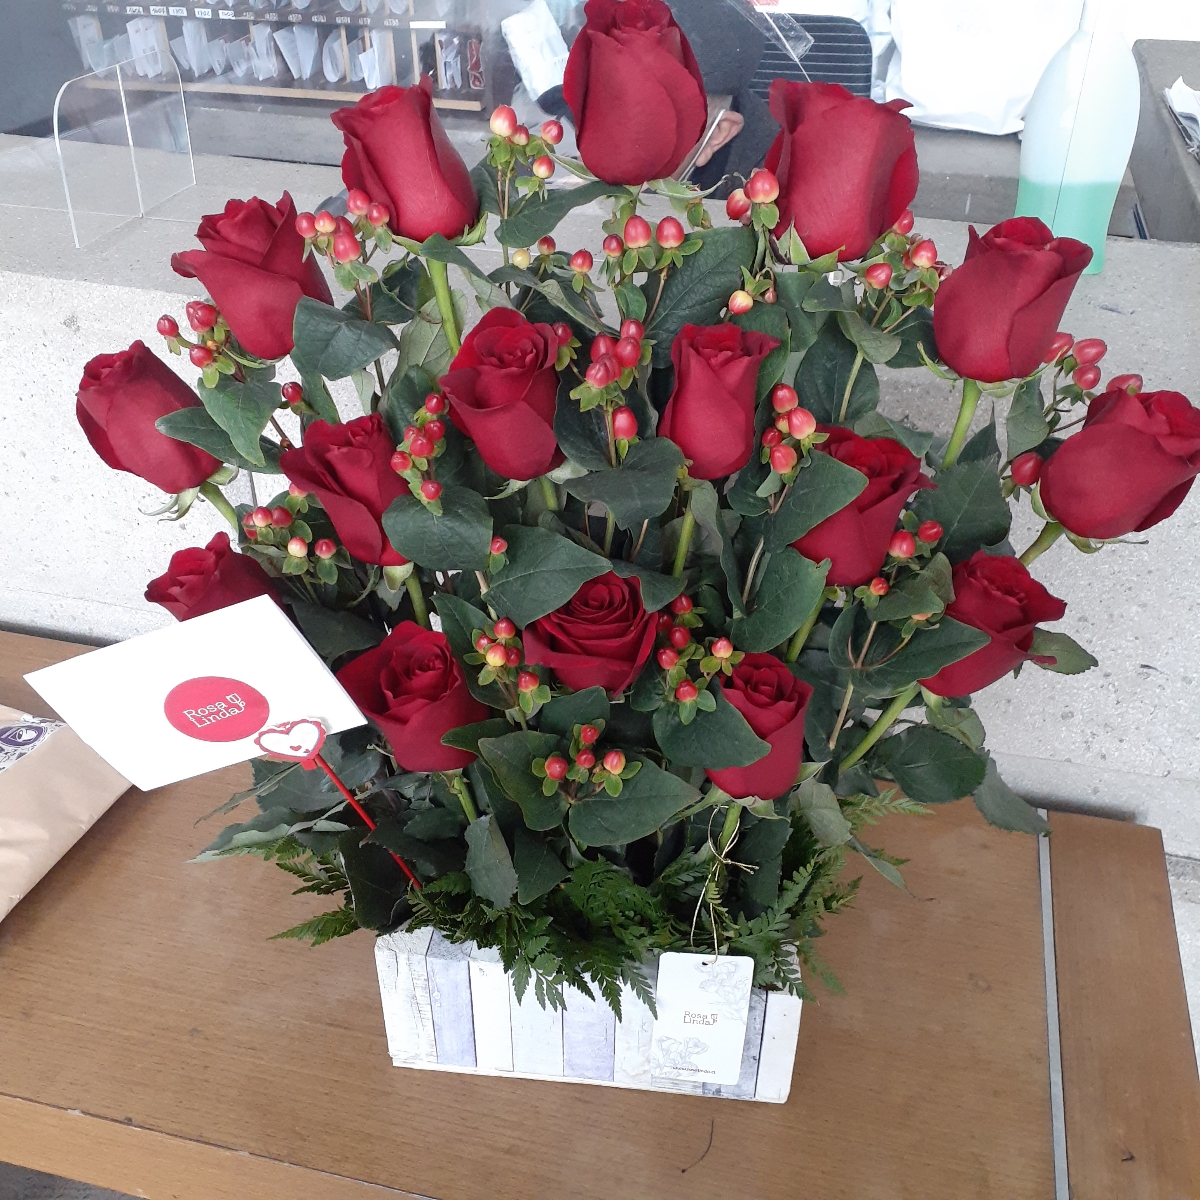 Jardín de Rosas Rojas - Arreglo floral con 16 rosas rojas e hypericum rojo - Pedido 256535